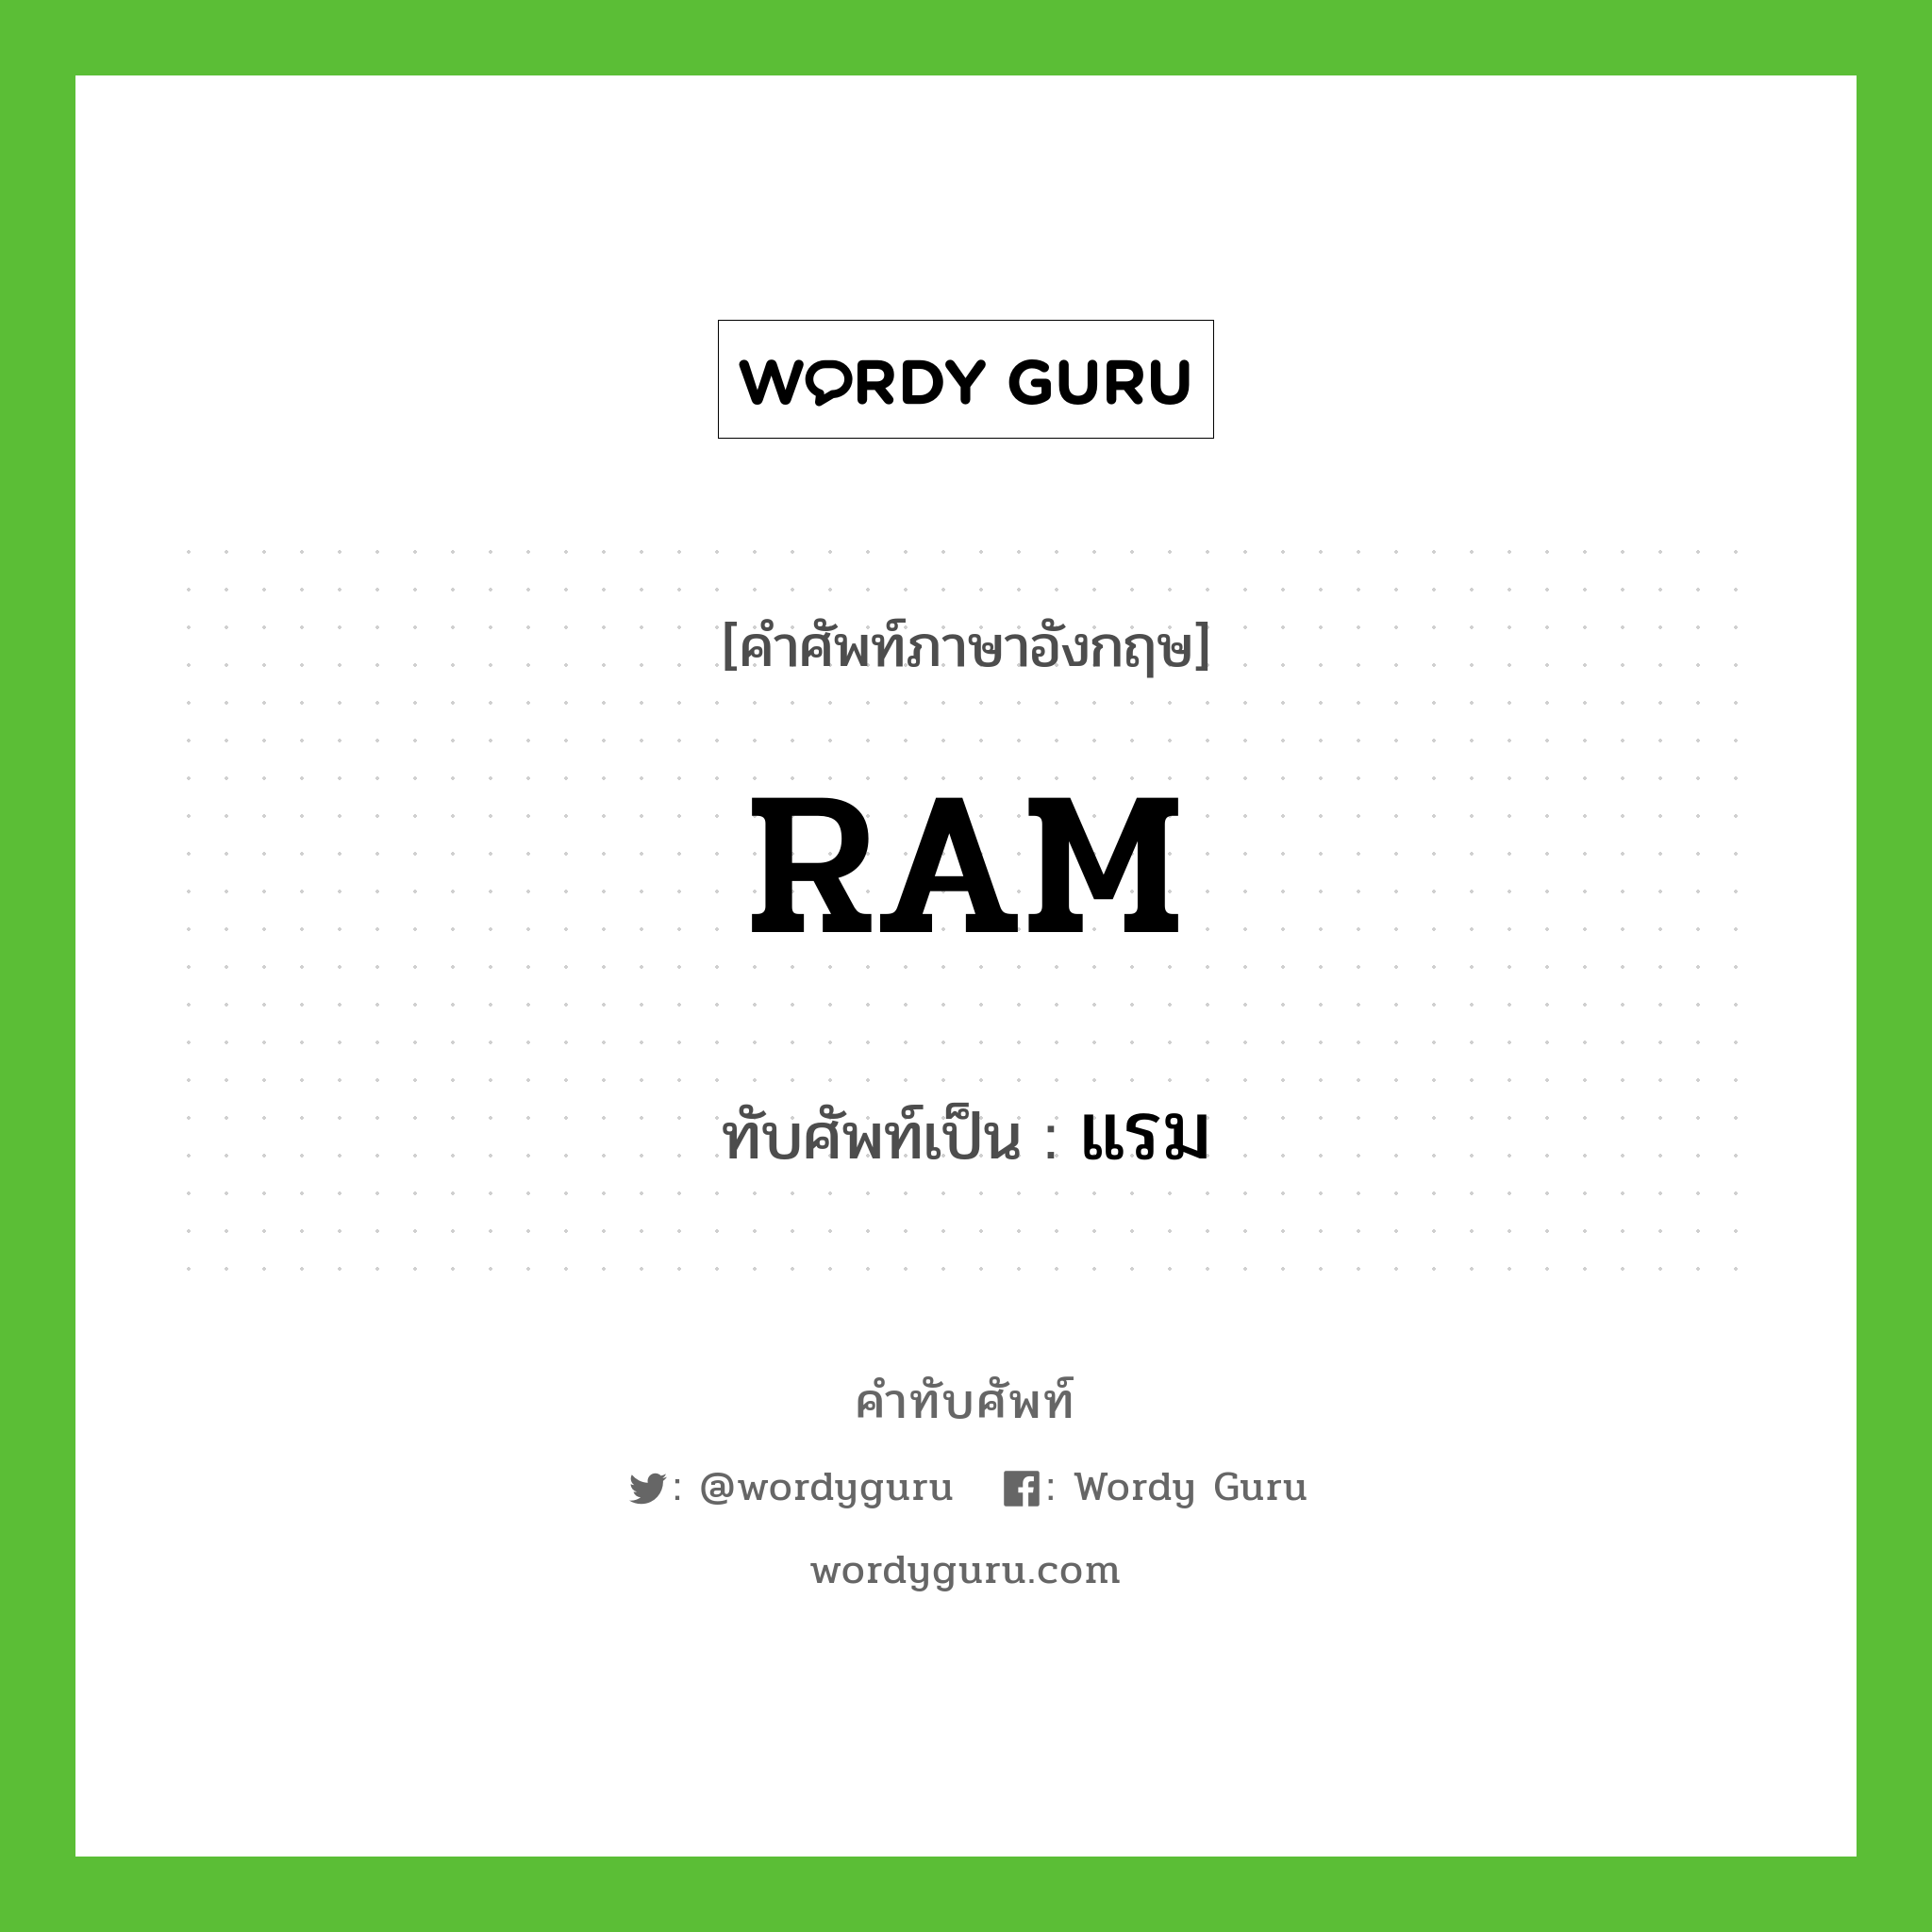 RAM เขียนเป็นคำไทยว่าอะไร?, คำศัพท์ภาษาอังกฤษ RAM ทับศัพท์เป็น แรม